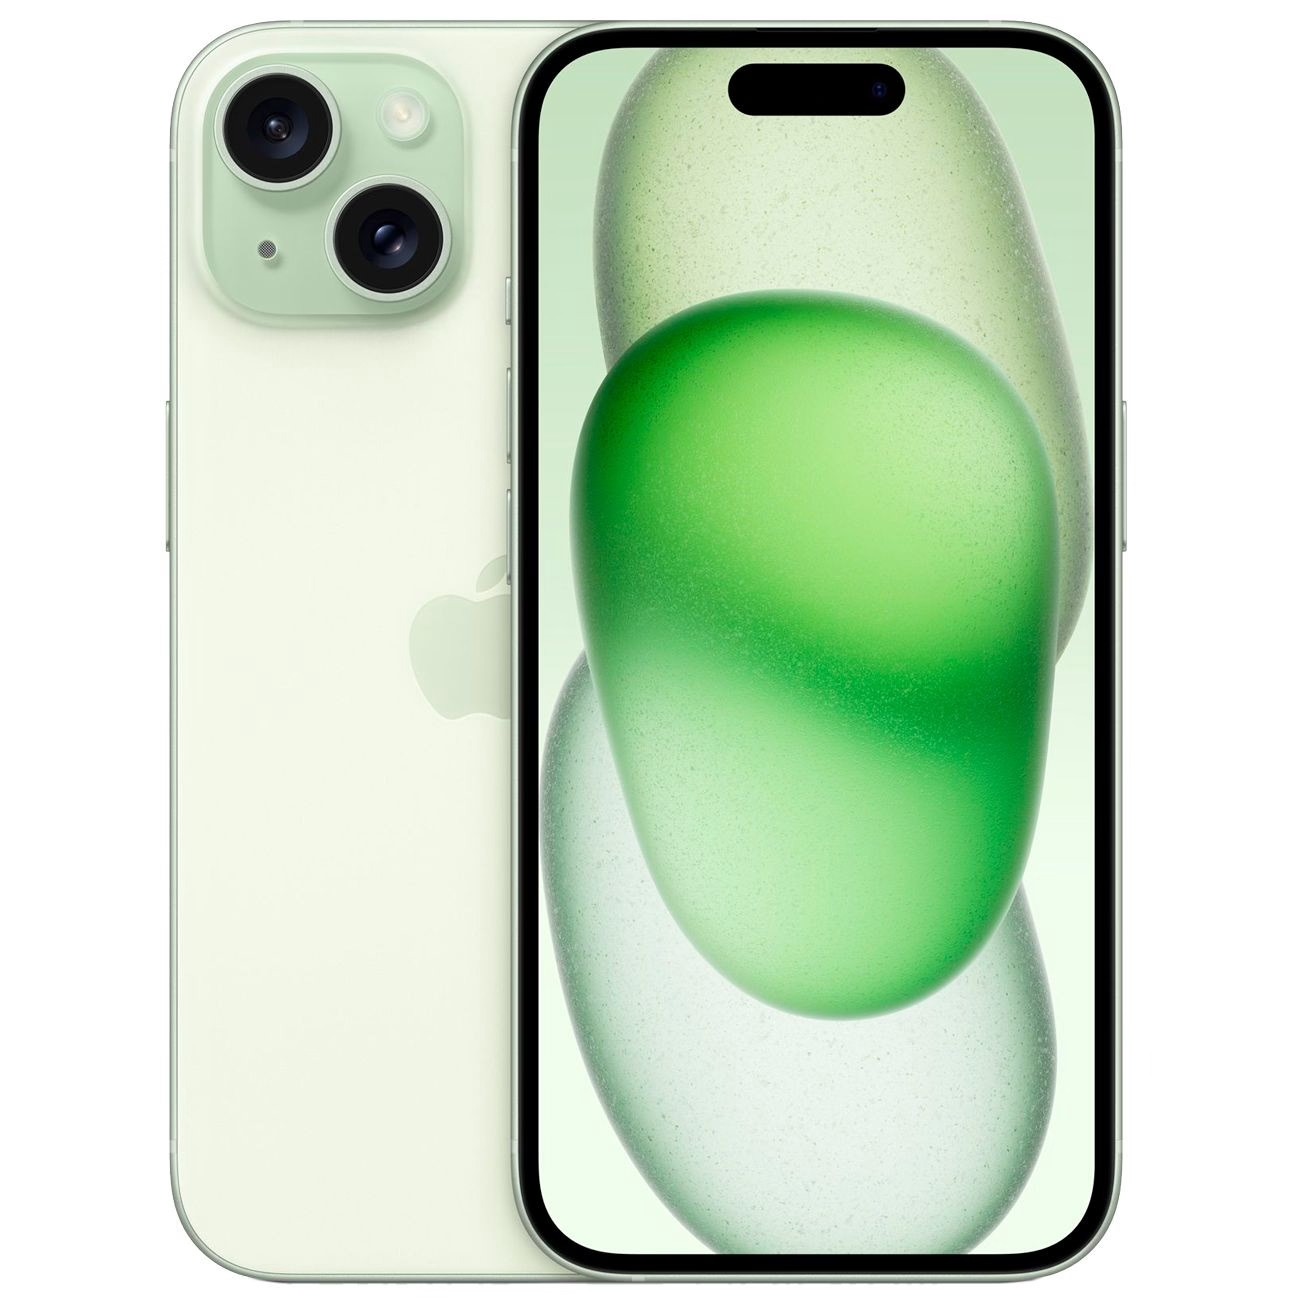 Купить смартфон apple iphone 15 512gb green Apple iPhone 15 в официальном магазине Apple, Samsung, Xiaomi. iPixel.ru Купить, заказ, кредит, рассрочка, отзывы,  характеристики, цена,  фотографии, в подарок.